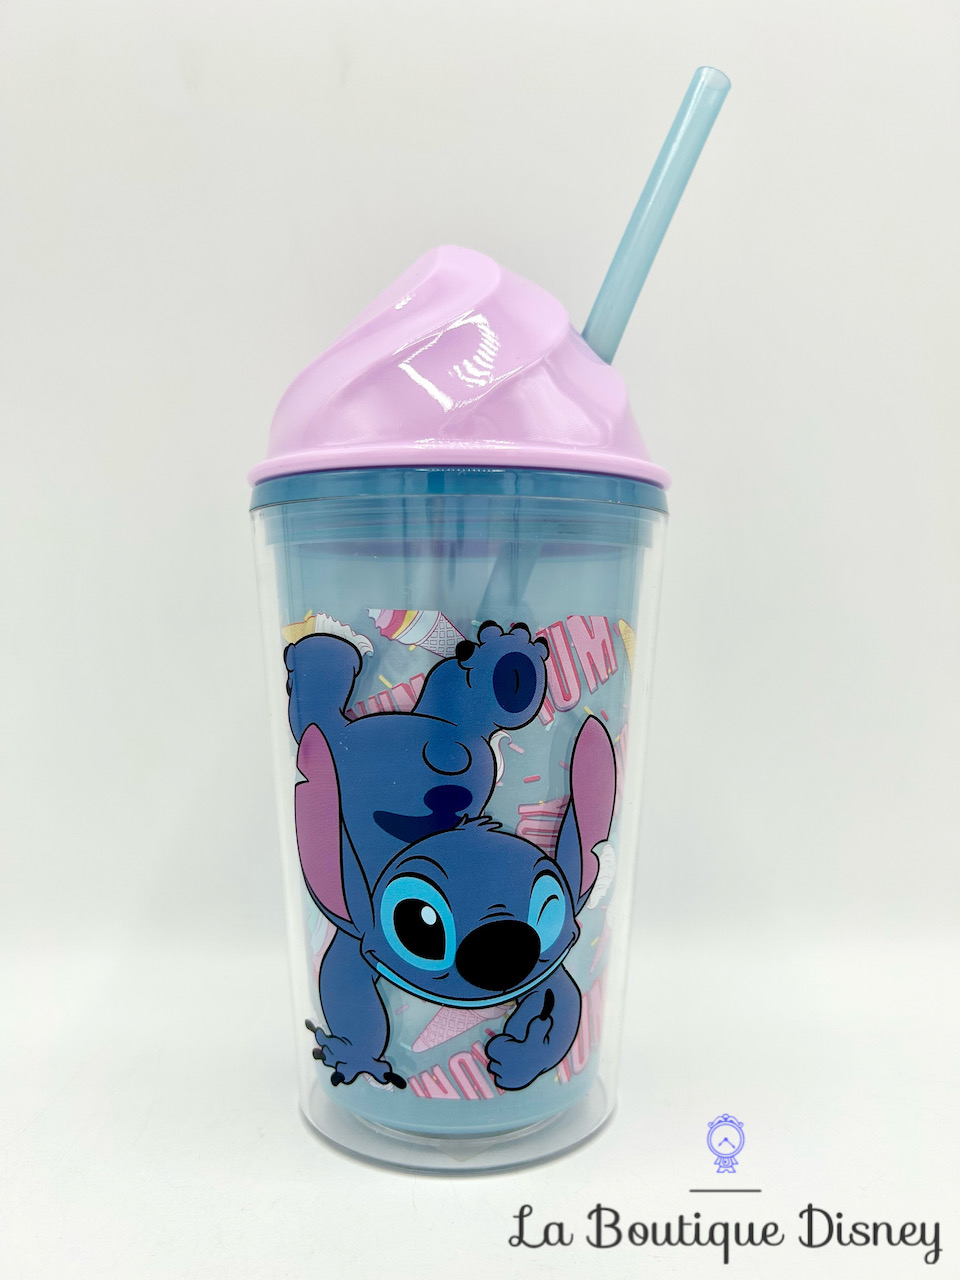 Gobelet paille Stitch Glace Disney Store 2017 verre plastique bleu rose